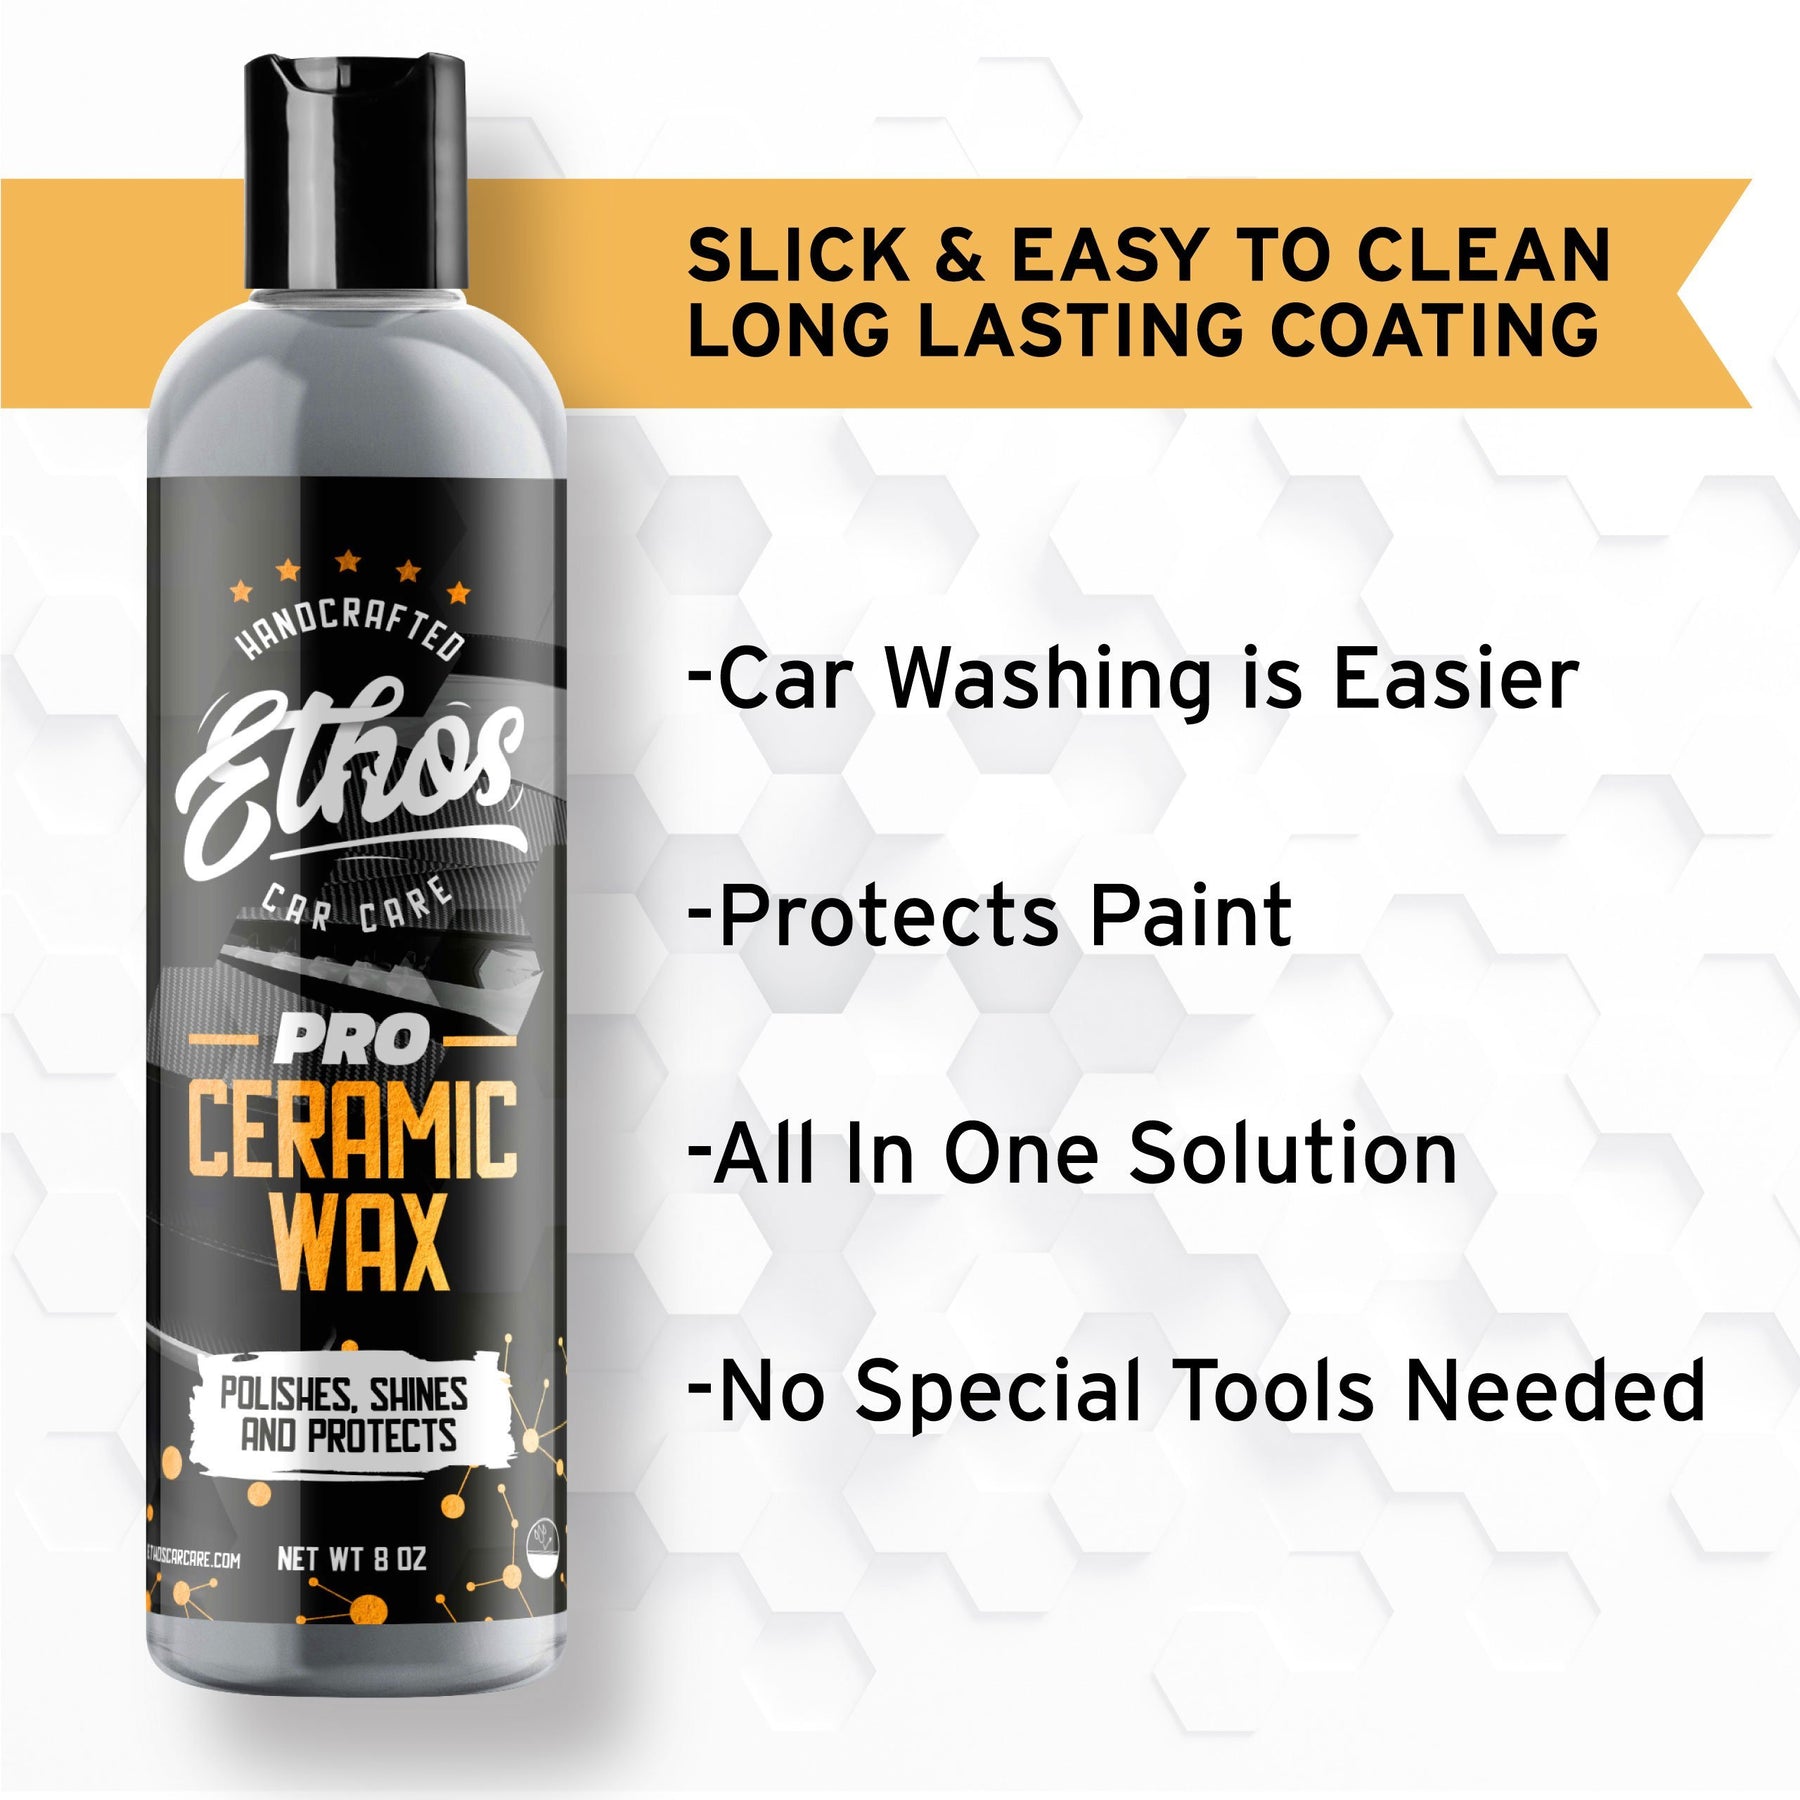 Ethos Detox Ceramic Coating Prep Spray - 8 oz